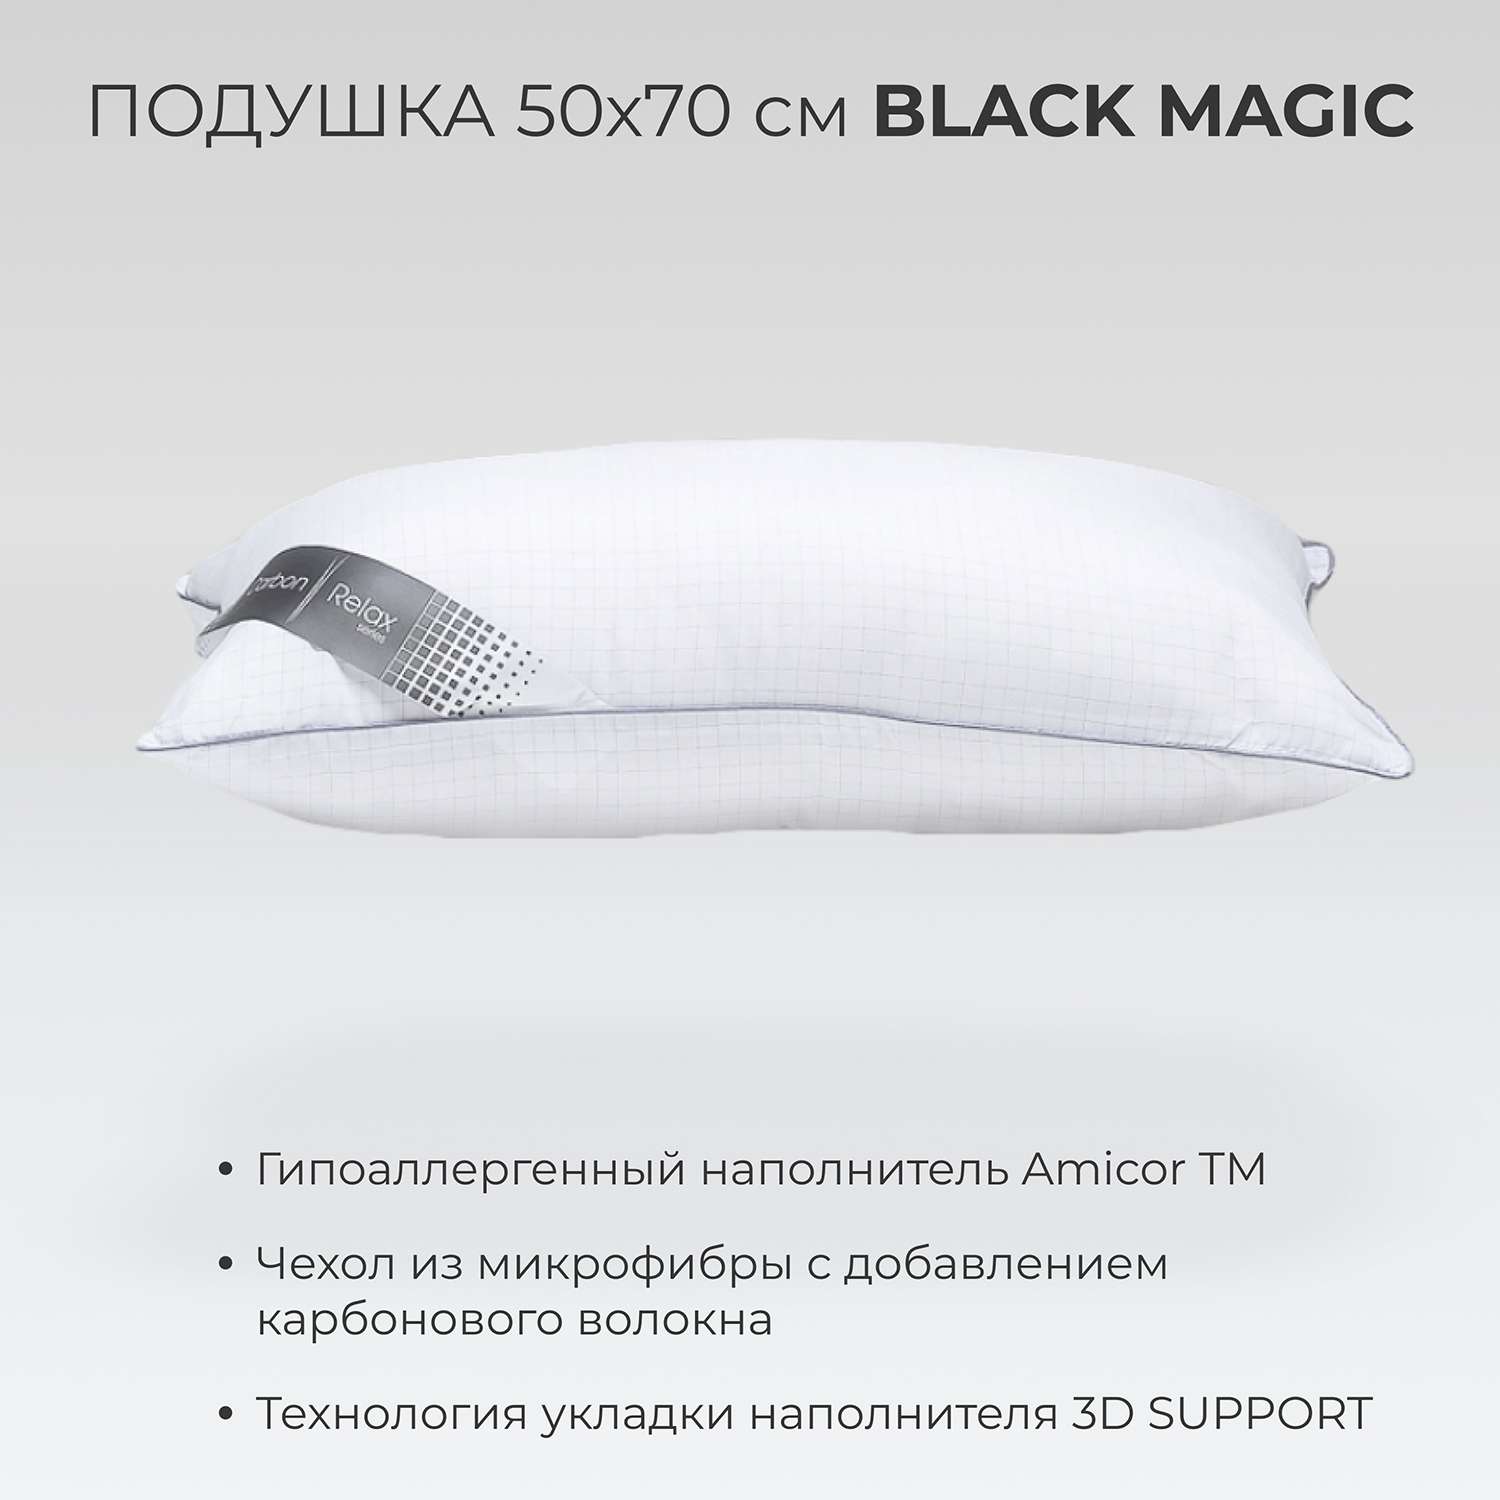 Подушка SONNO BLACK MAGIC 50х70 Amicor TM - фото 2